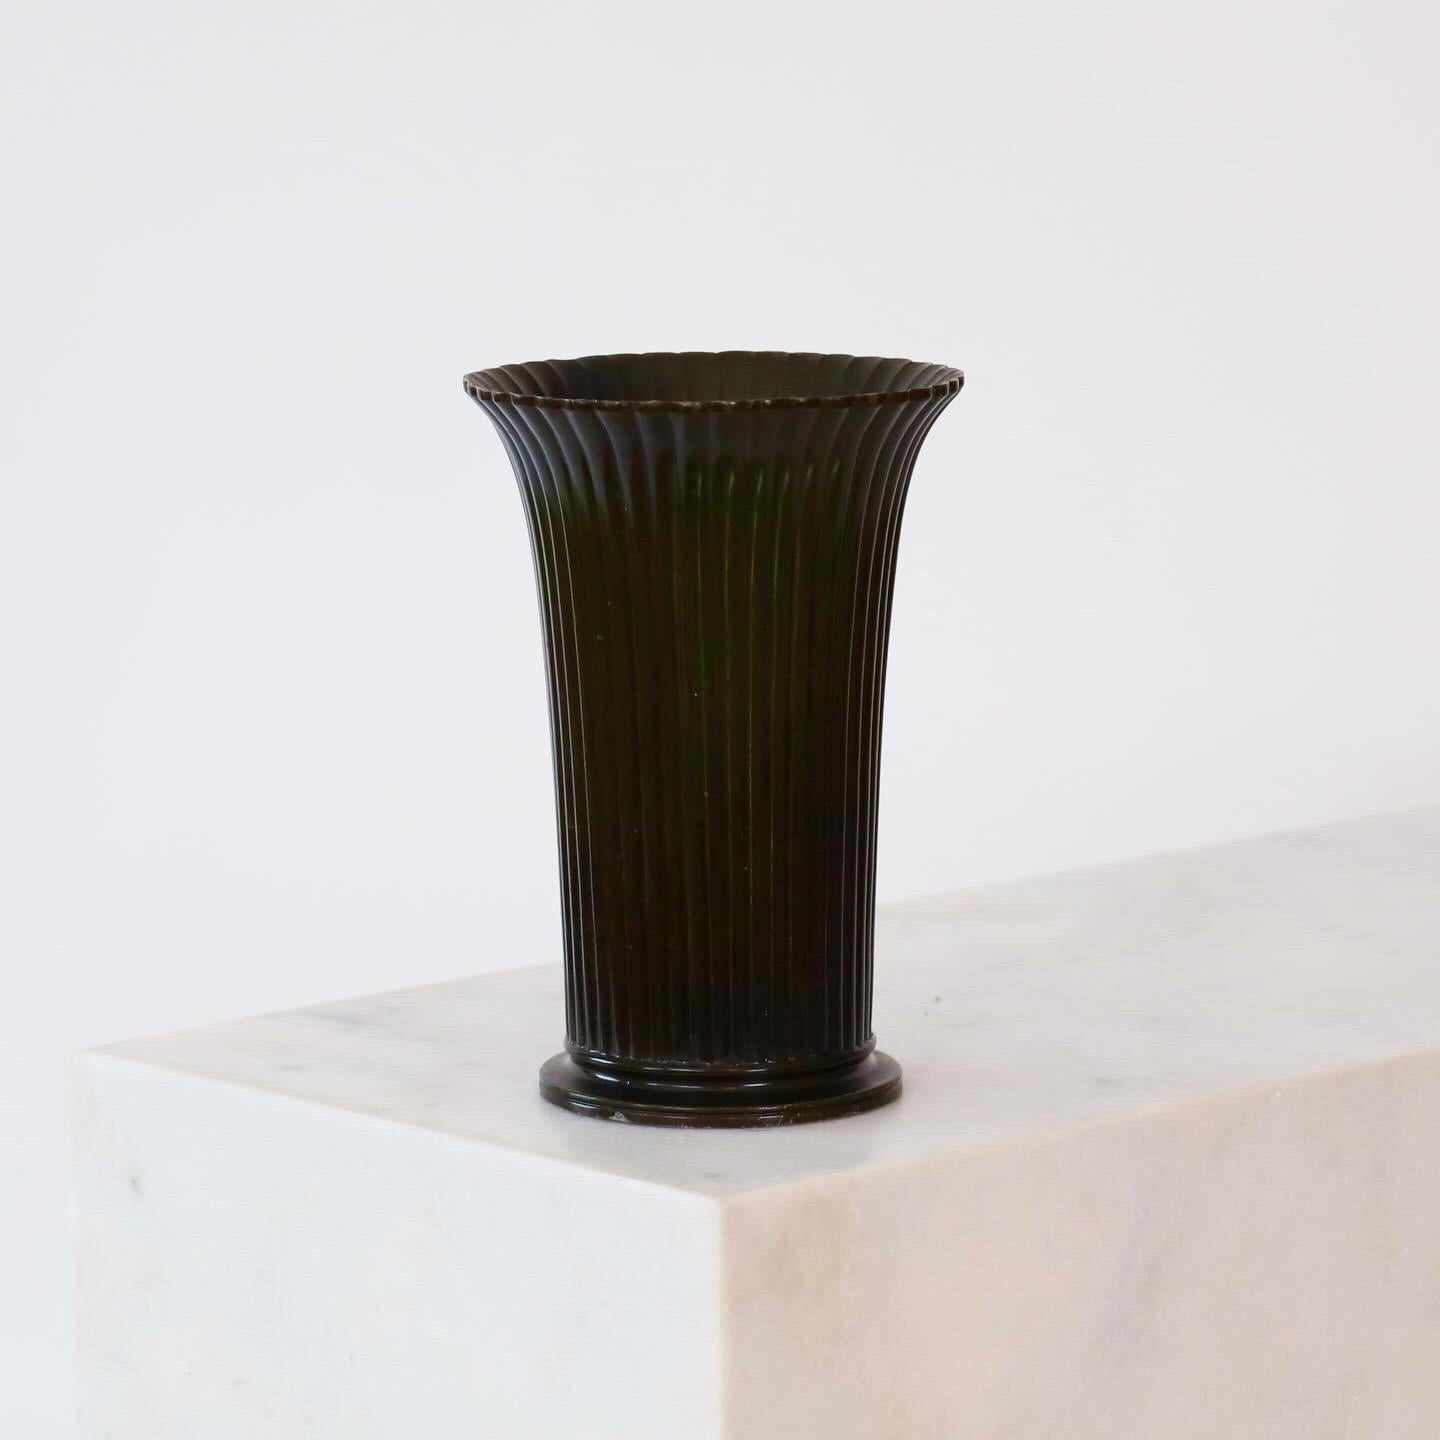 Un vase en métal aux lignes verticales conçu par Just Andersen dans les années 1942. Une pièce qui attire l'attention et qui est en très bon état.

* Un vase rond en métal avec des lignes verticales
* Designer : Just Andersen
* Modèle : D2318
*